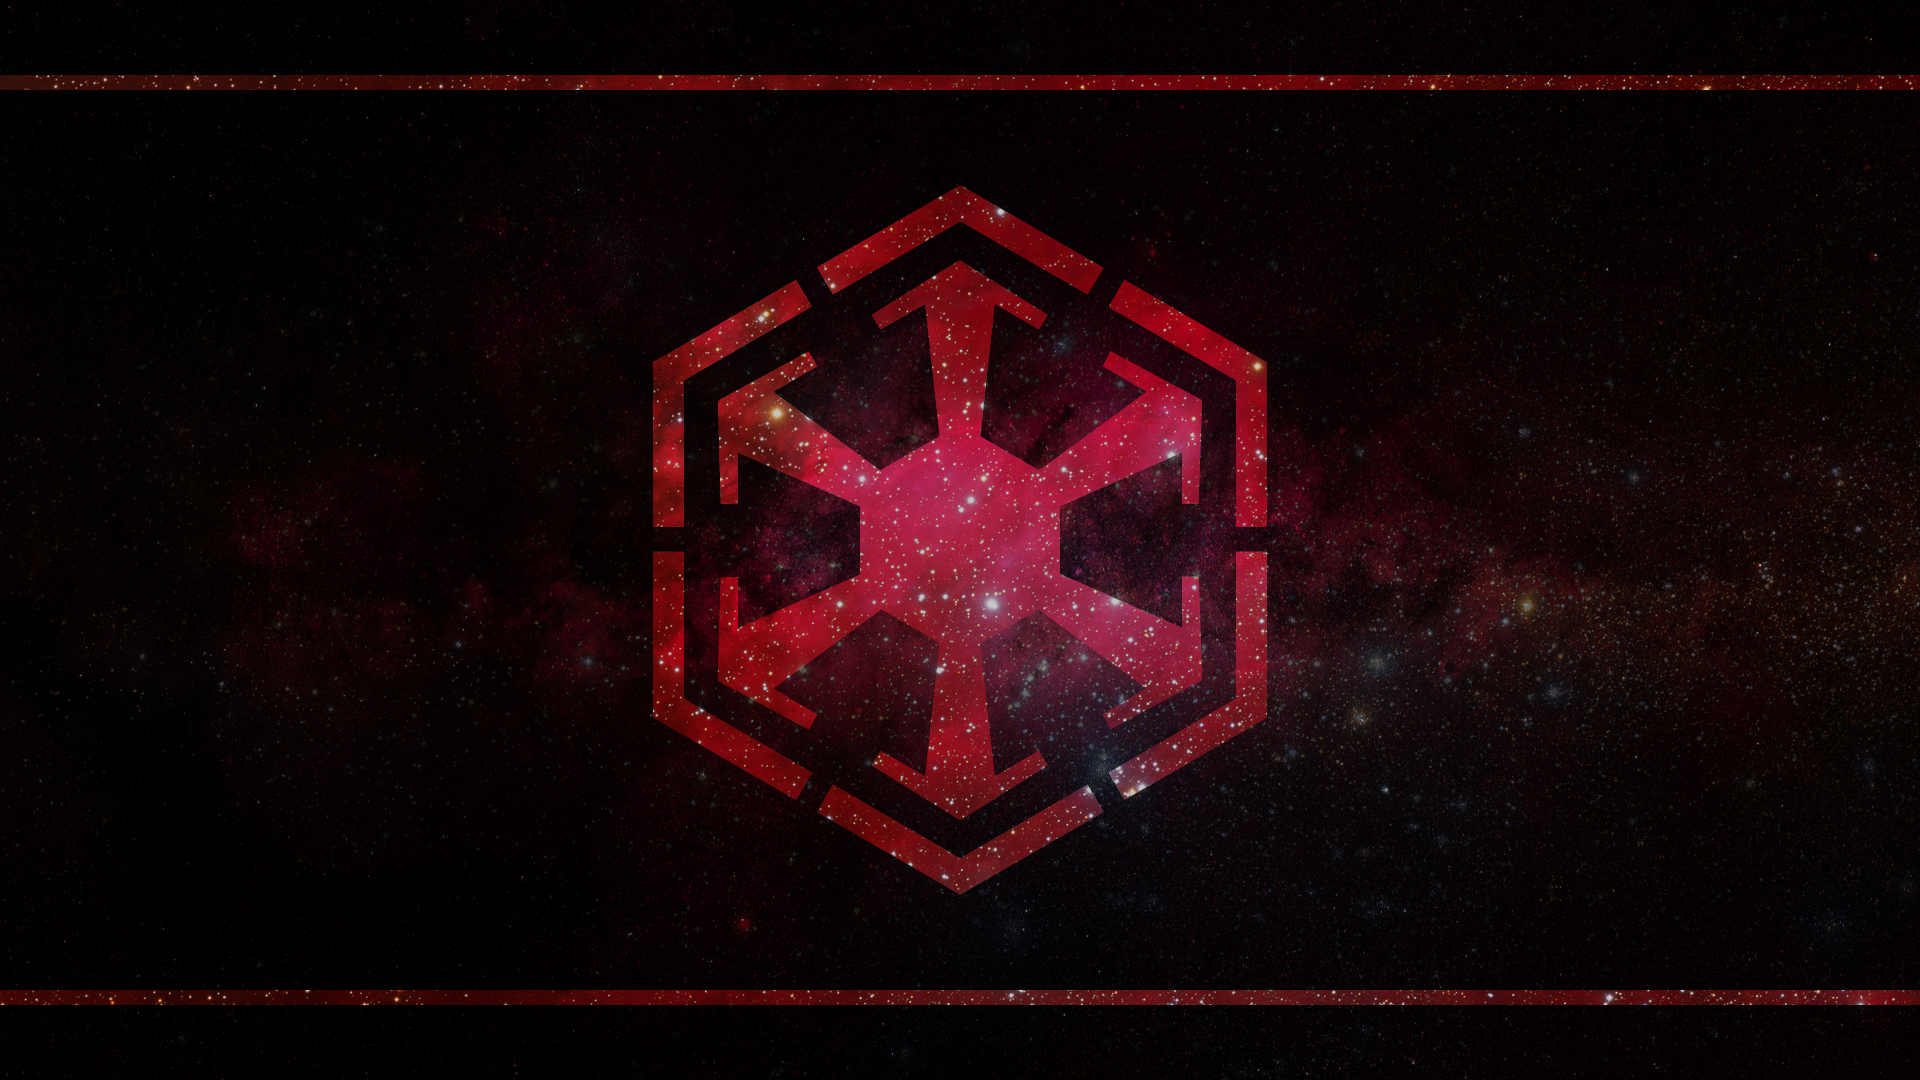 Sith Empire